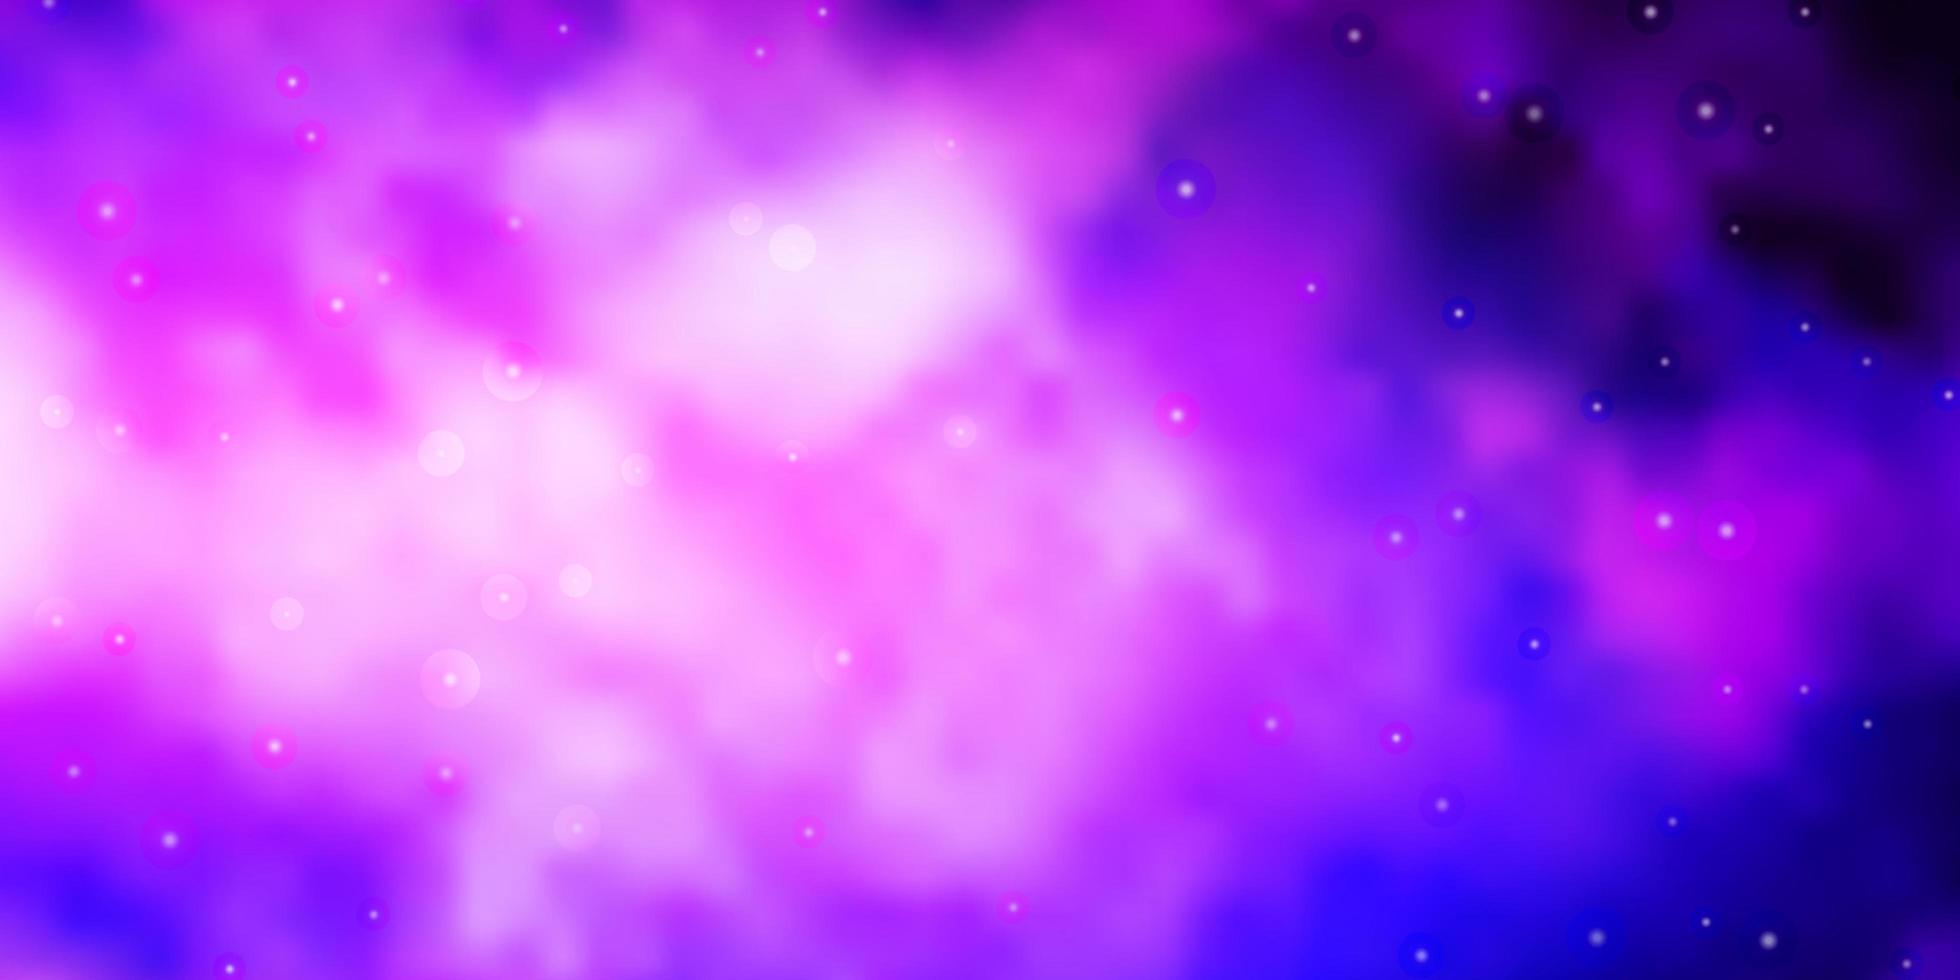 sfondo vettoriale viola scuro, rosa con stelle colorate.